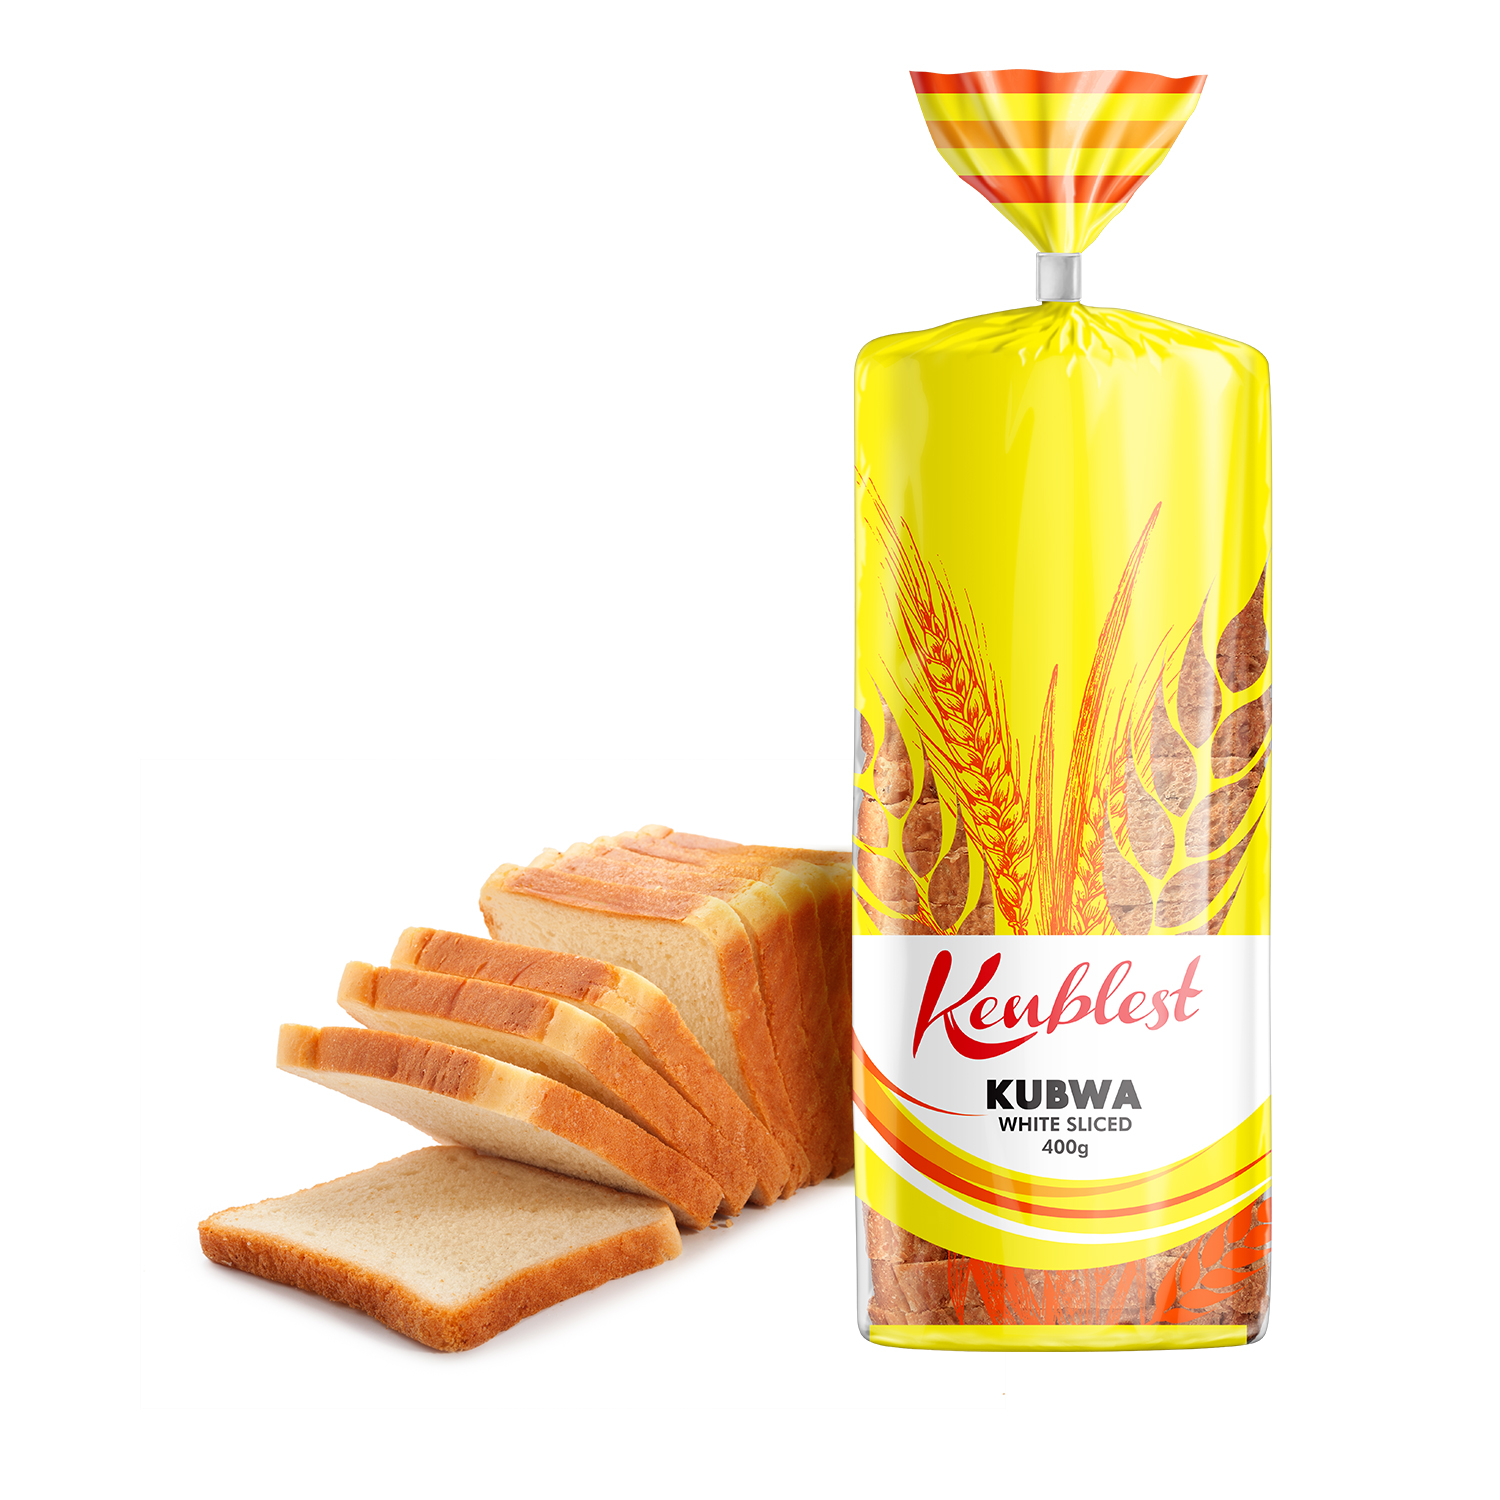 Kenblest Kubwa White Sliced 400g Pack Bread